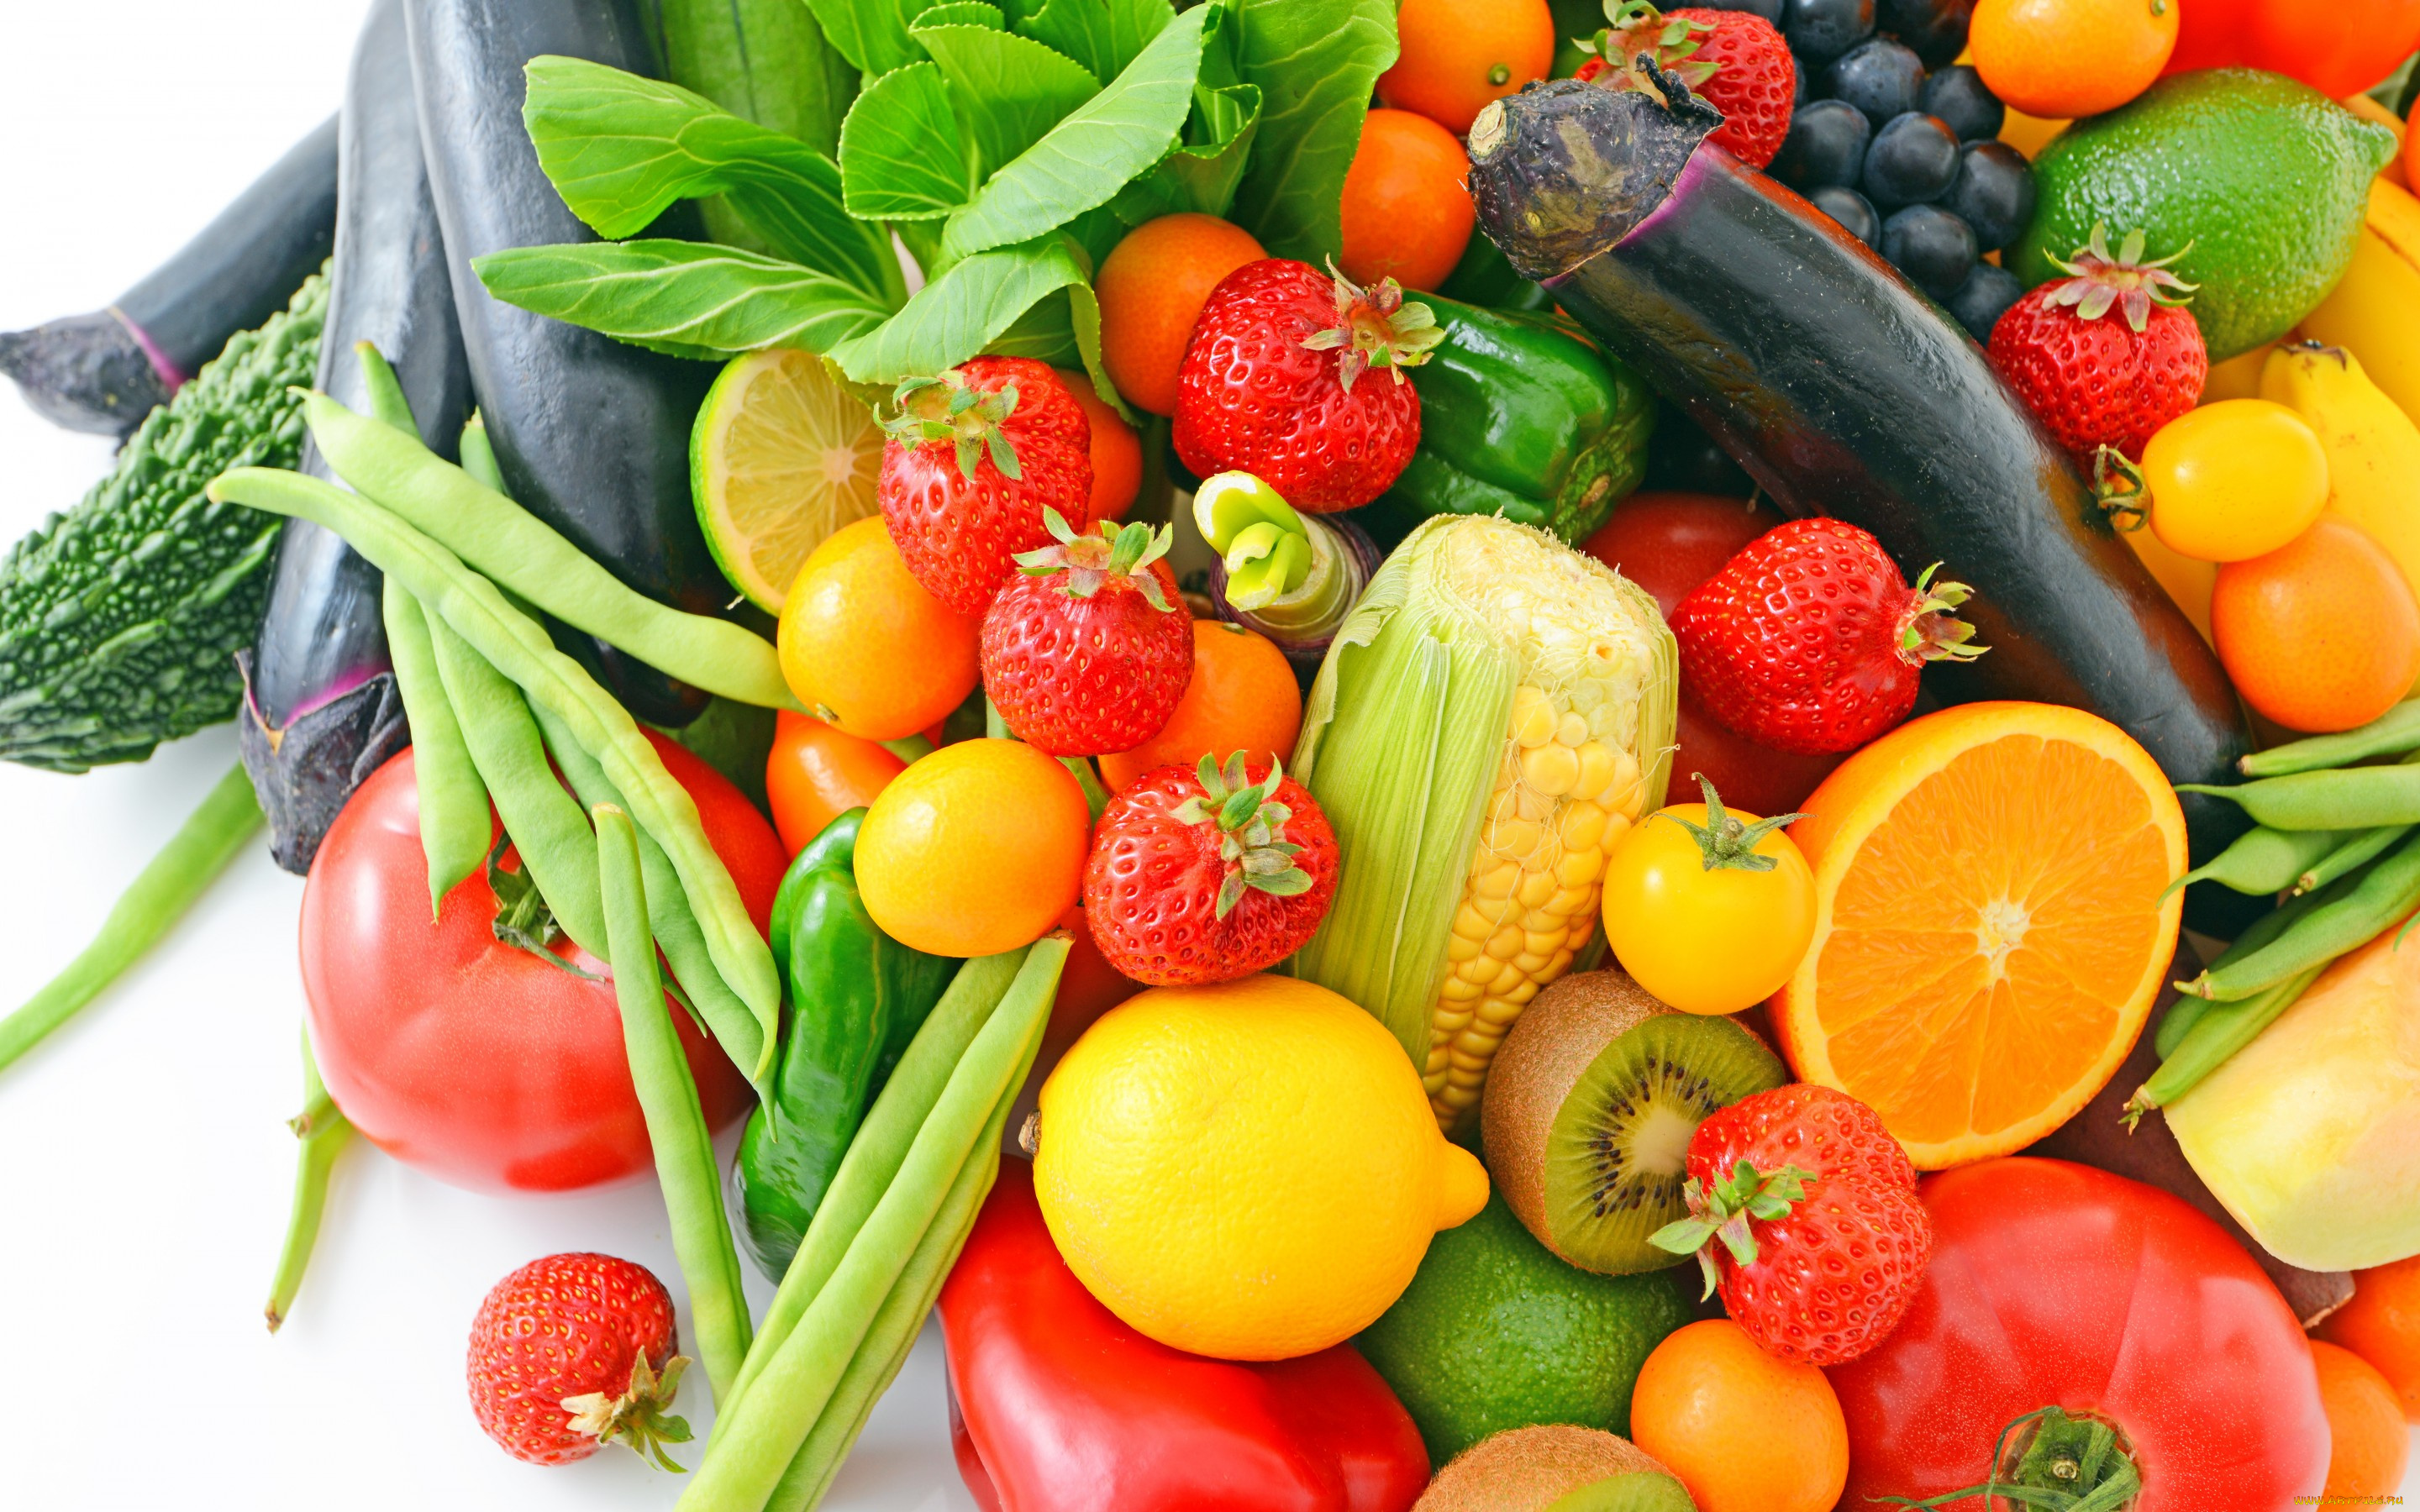 еда, фрукты, и, овощи, вместе, fresh, апельсин, ягоды, овощи, фрукты, киви, клубника, баклажан, кукуруза, лимоны, berries, fruits, vegetables